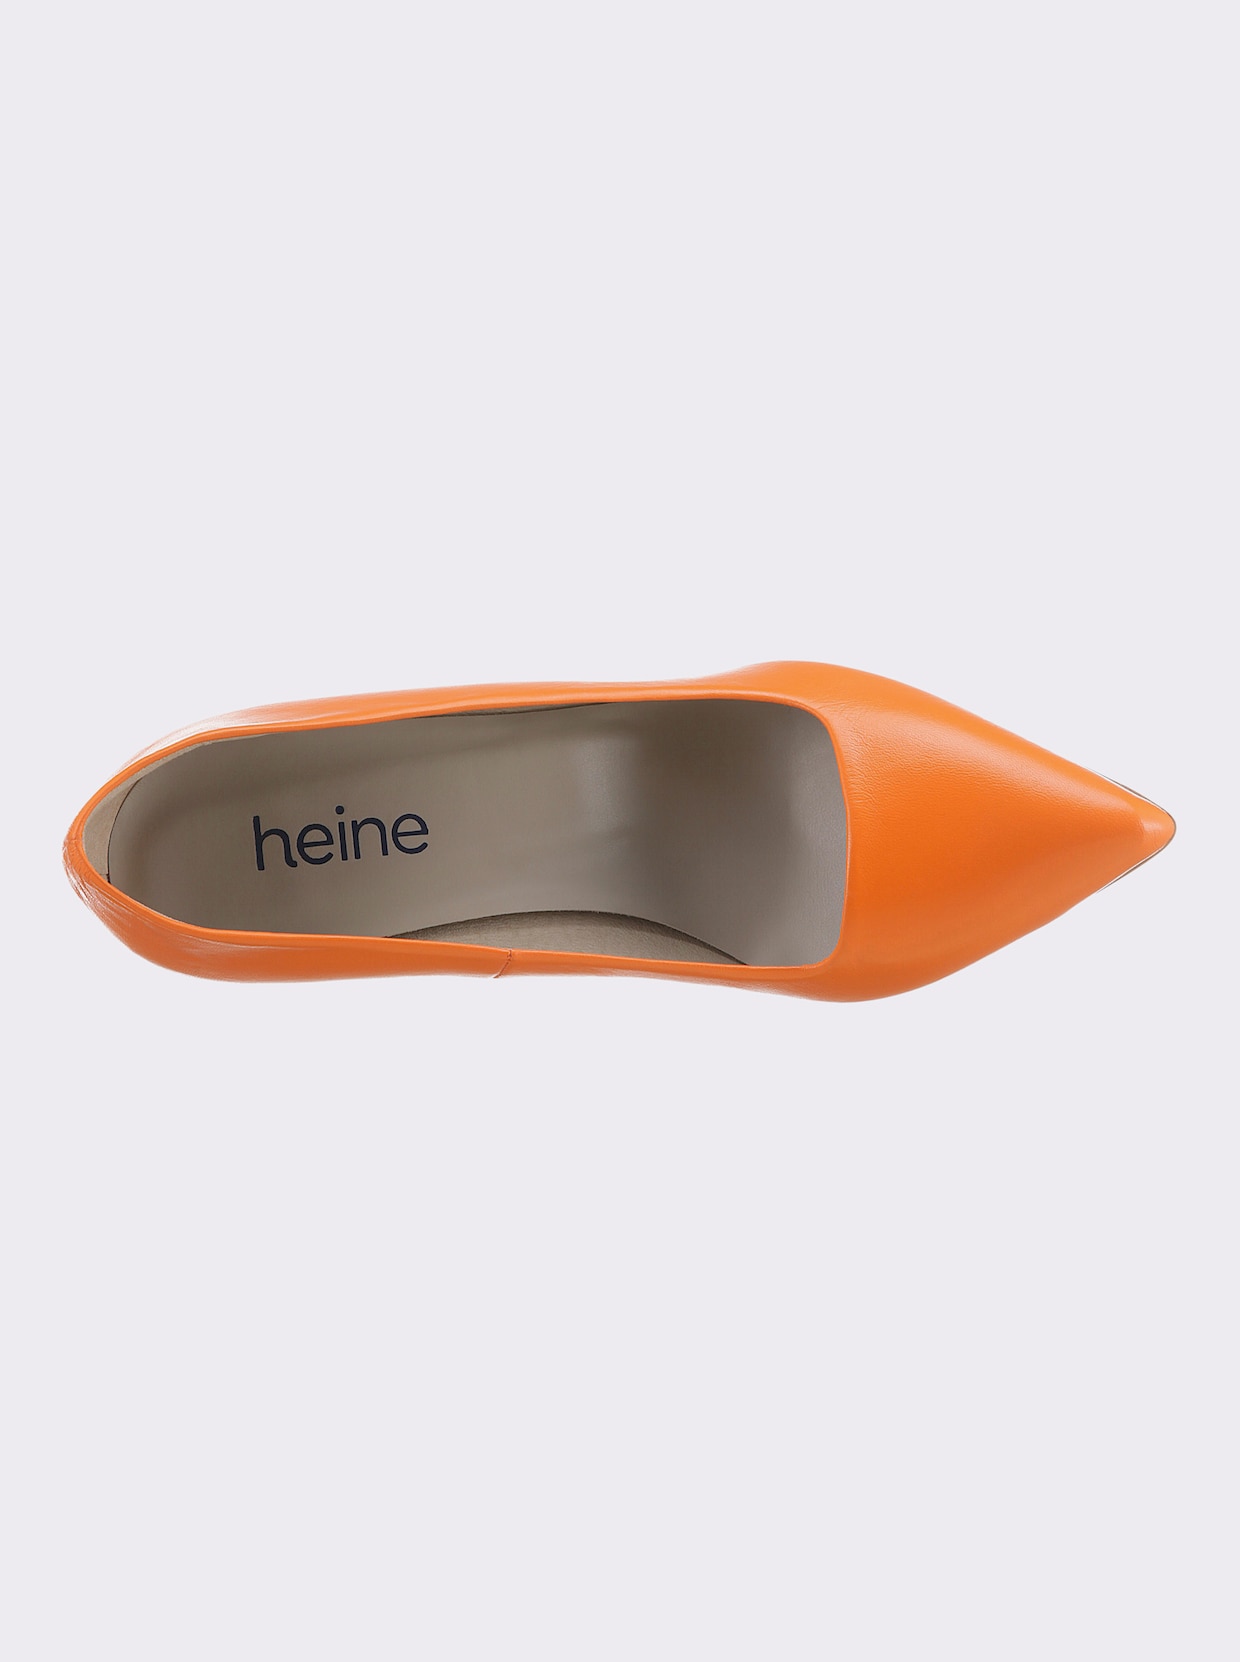 heine Pumps - orange